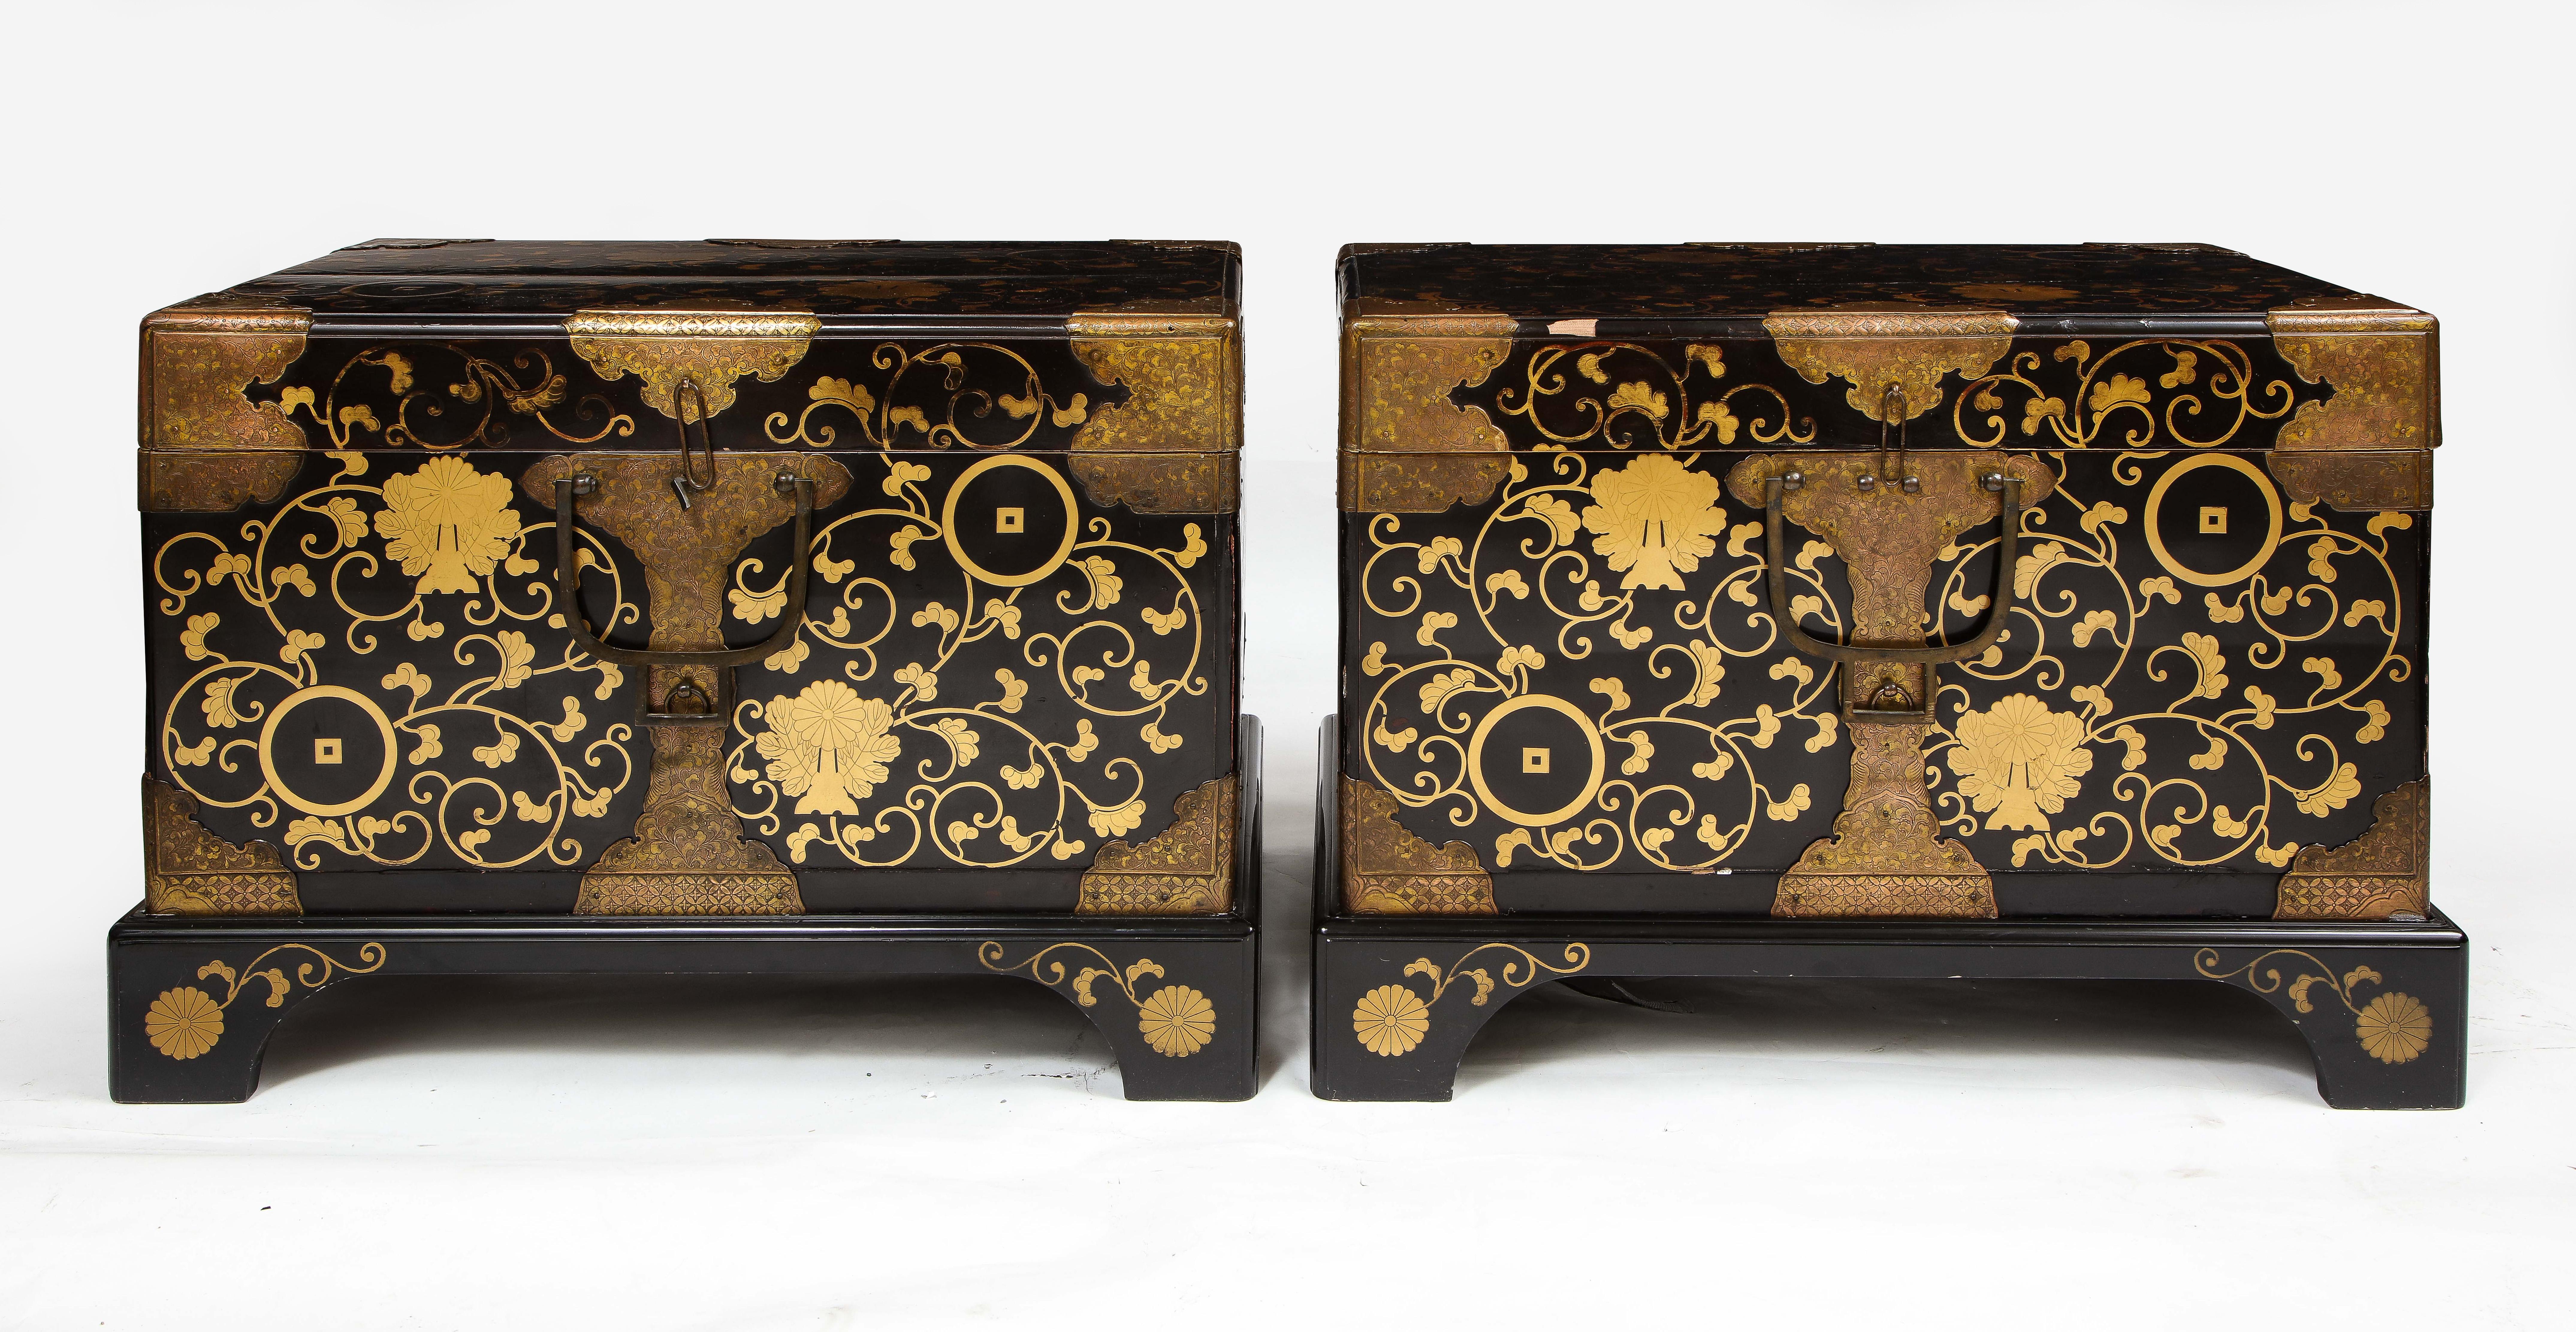 Ein feines Paar japanischer lackierter Truhen aus der Meiji-Periode des 19. Jahrhunderts, montiert in Dore-Bronze.  Jede Truhe ist wunderschön mit einem feinen schwarzen Lack, der sehr detailliert und handbemalt mit 24K vergoldeten Dekorationen von